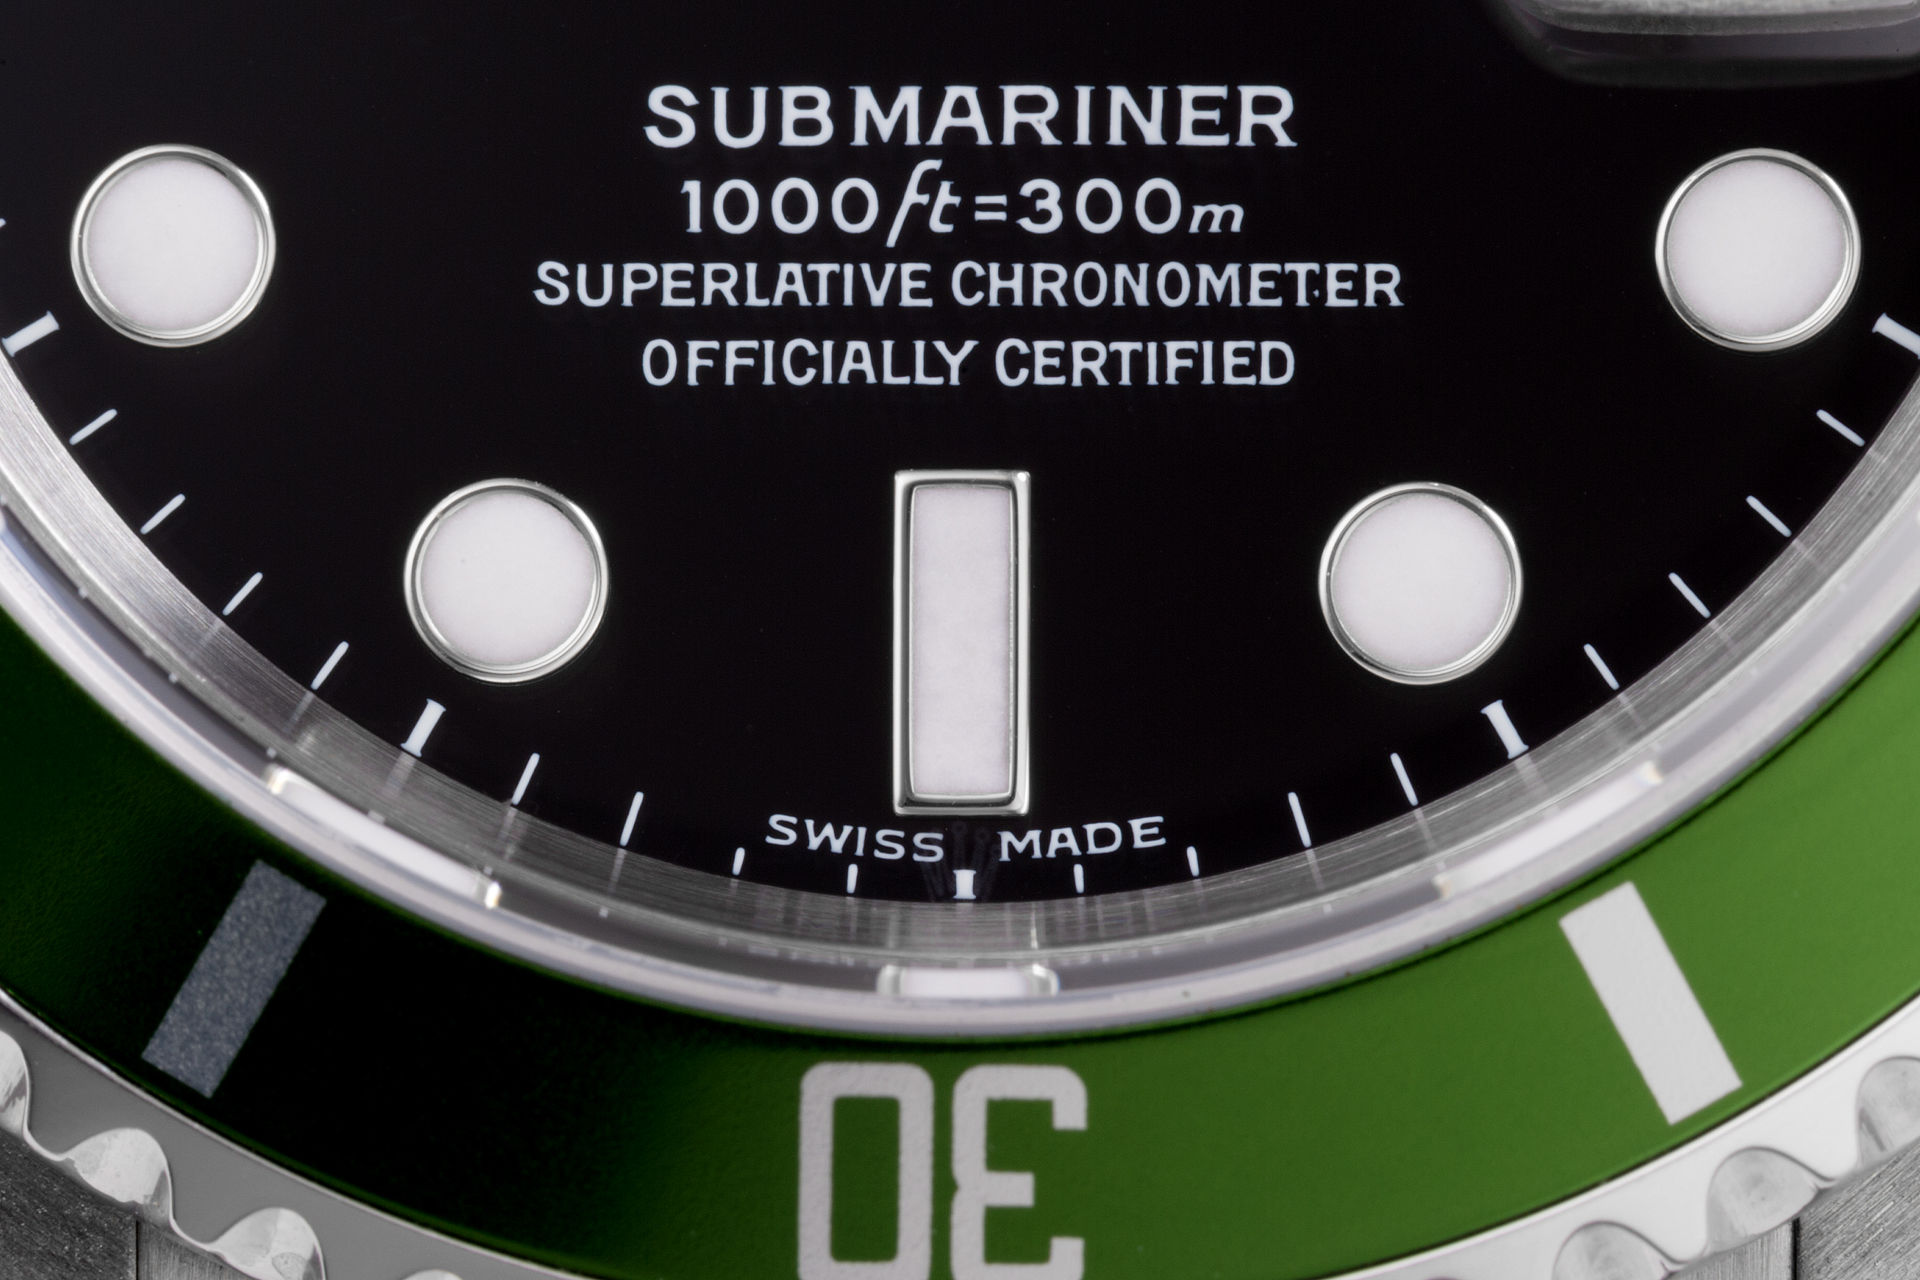 ref 16610LV | Under Rolex Warranty | Rolex Submariner Date